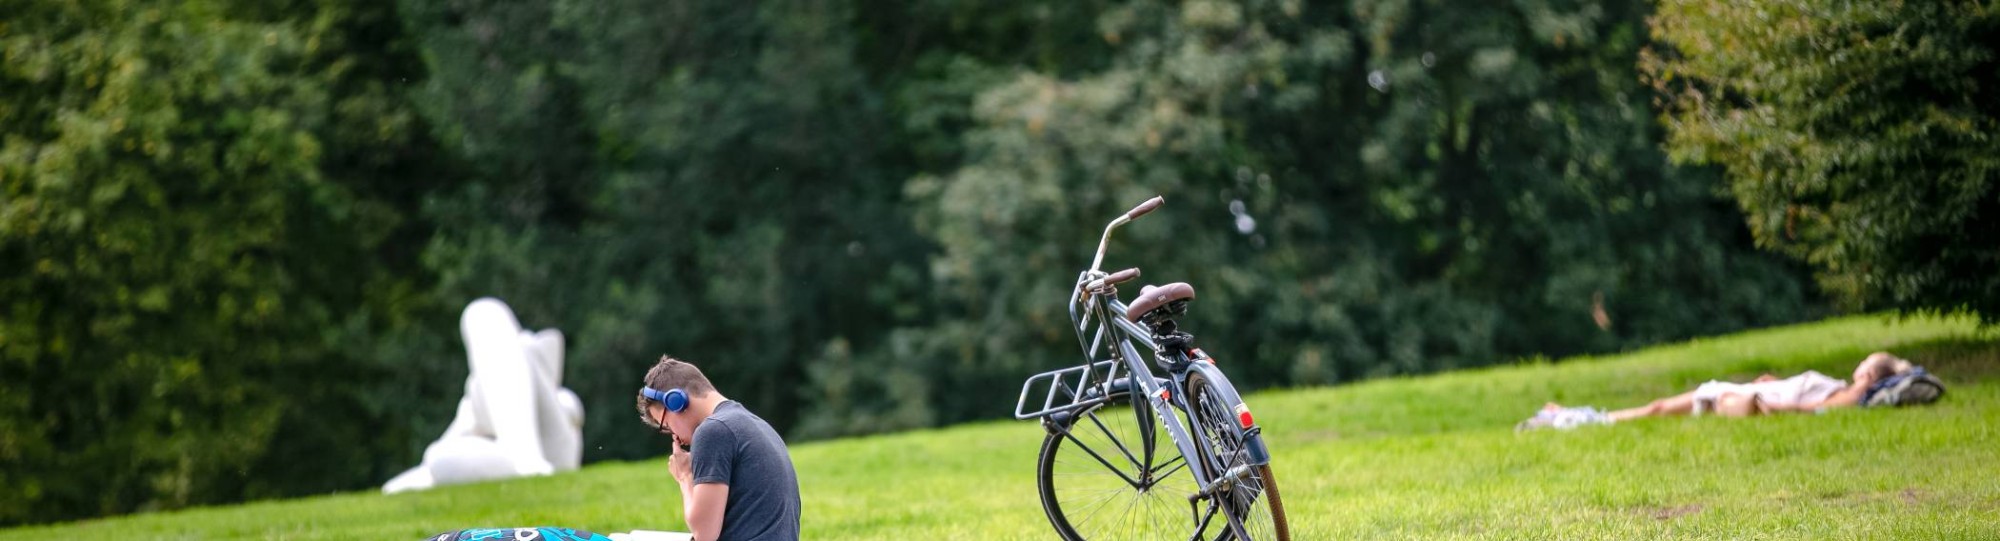 Arnhem jongen in park met fiets